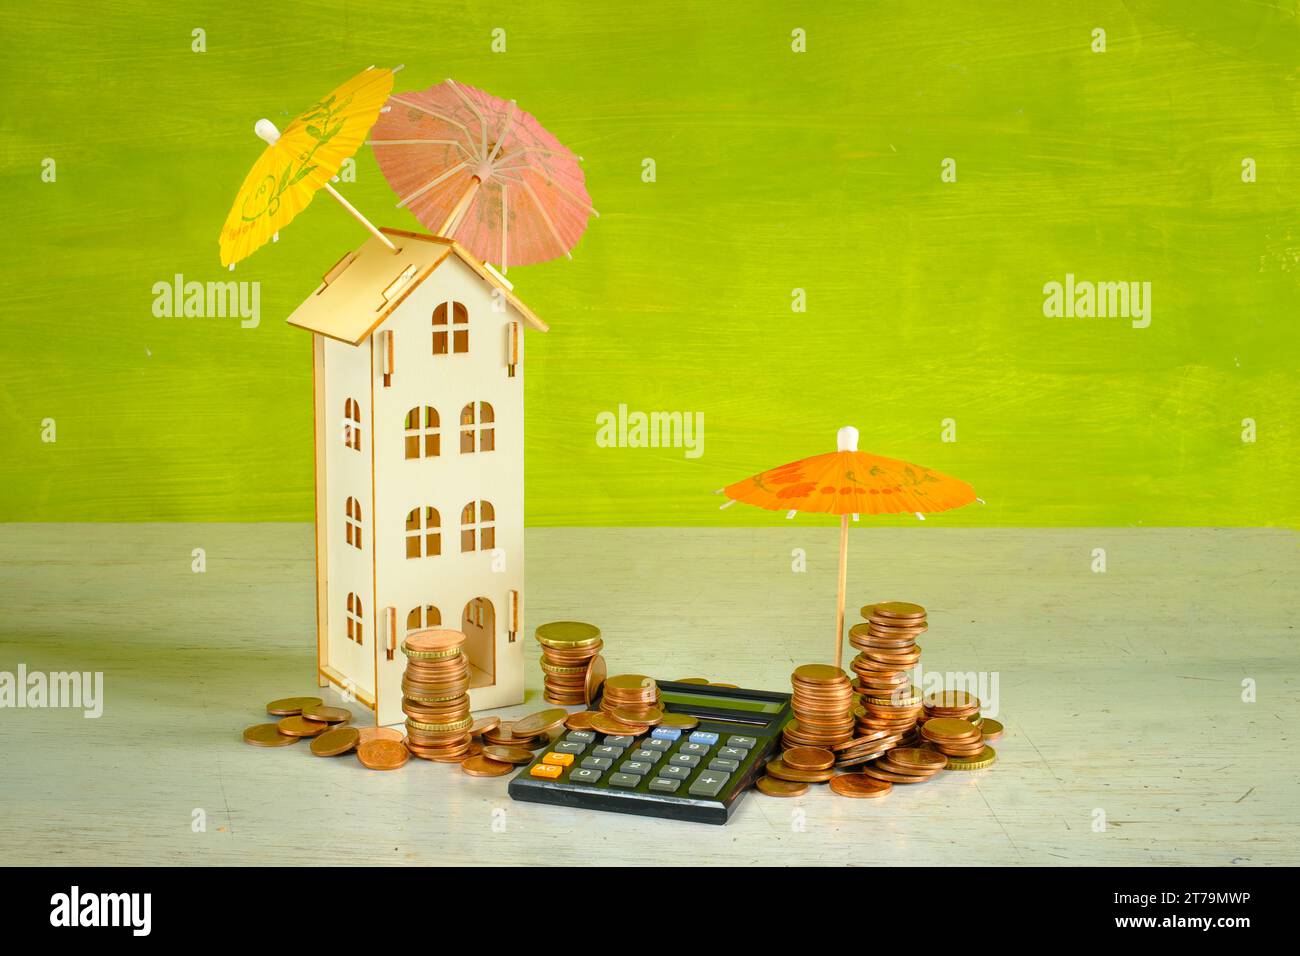 Vermögensverwaltung, Assest Management Konzept mit Taschenrechner, Stapel Geld, ein Holzhaus und mehrfarbige Regenschirme, kostenloser Kopierraum. Stockfoto